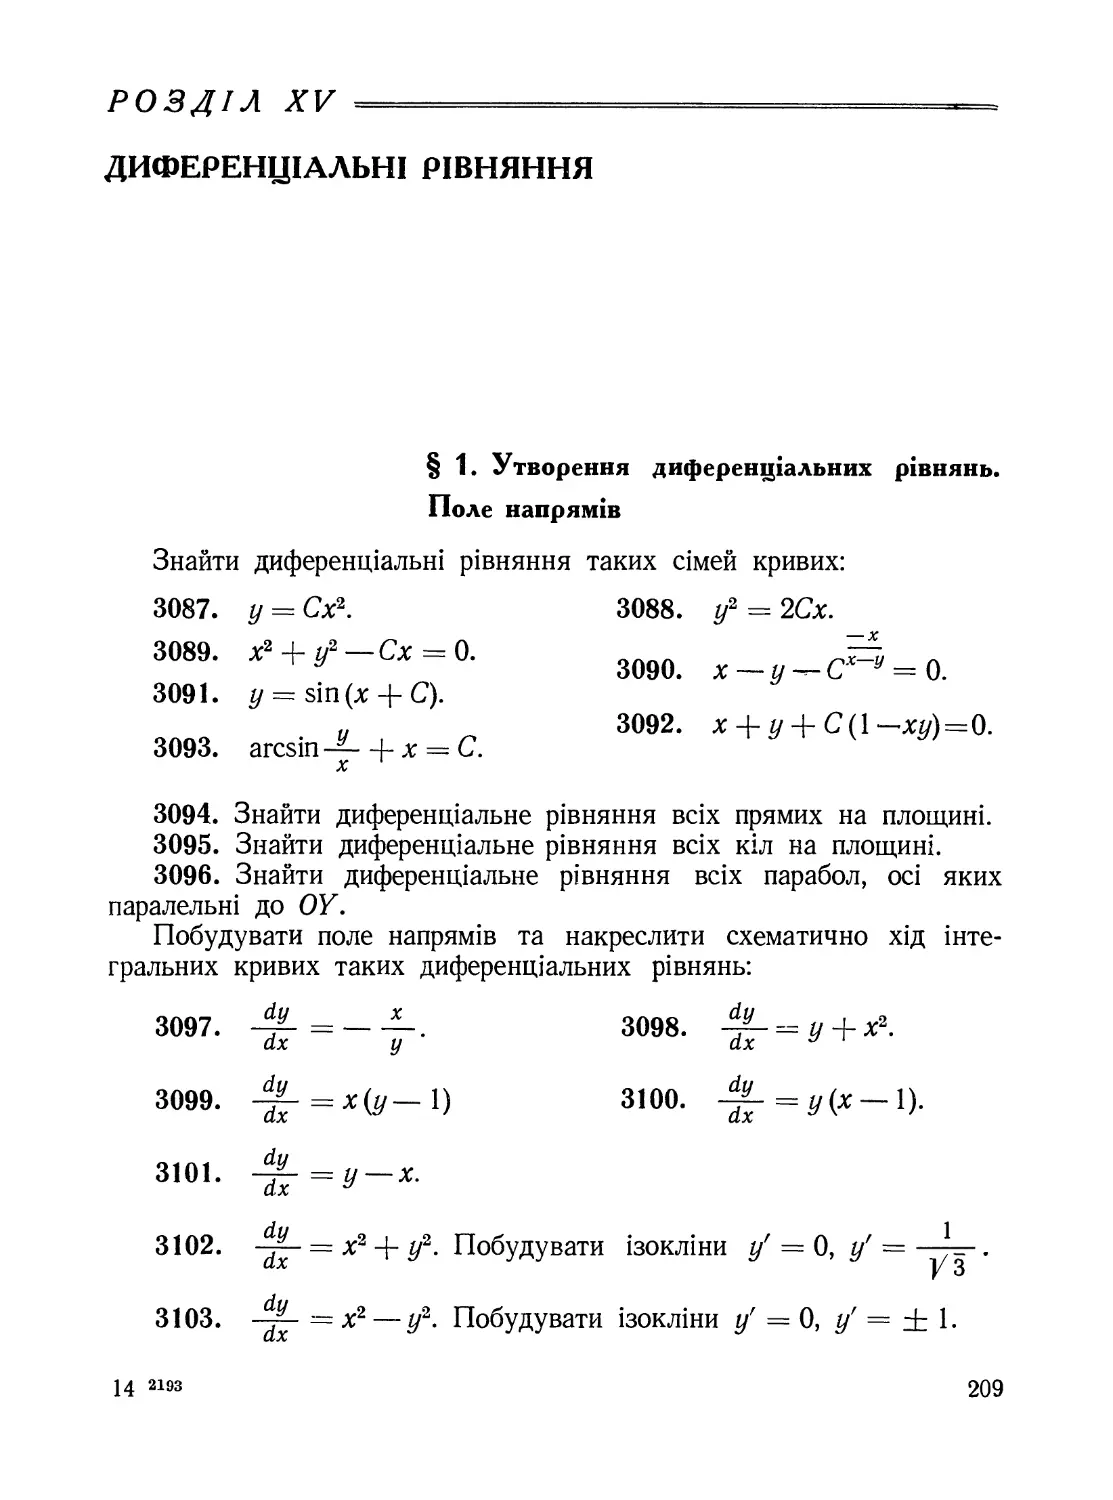 Розділ XV. Диференціальні рівняння